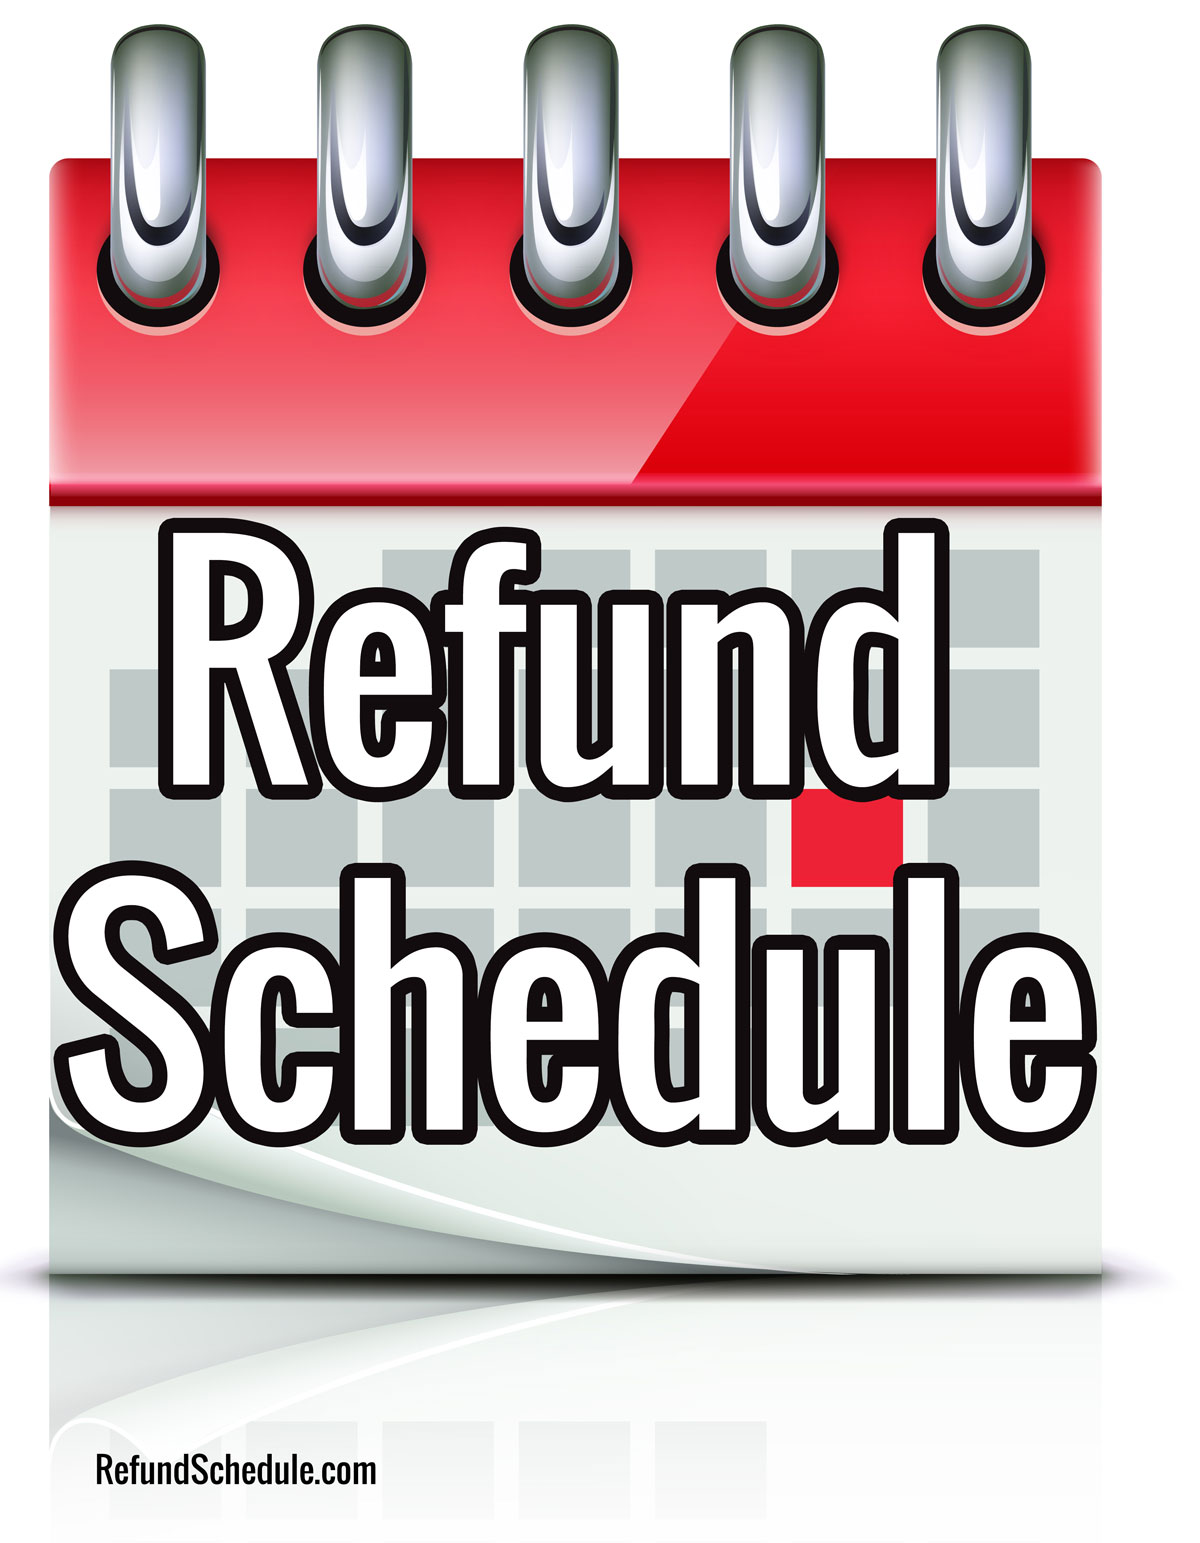 refund-schedule-9 - IRS Refund Schedule 20191200 x 1543